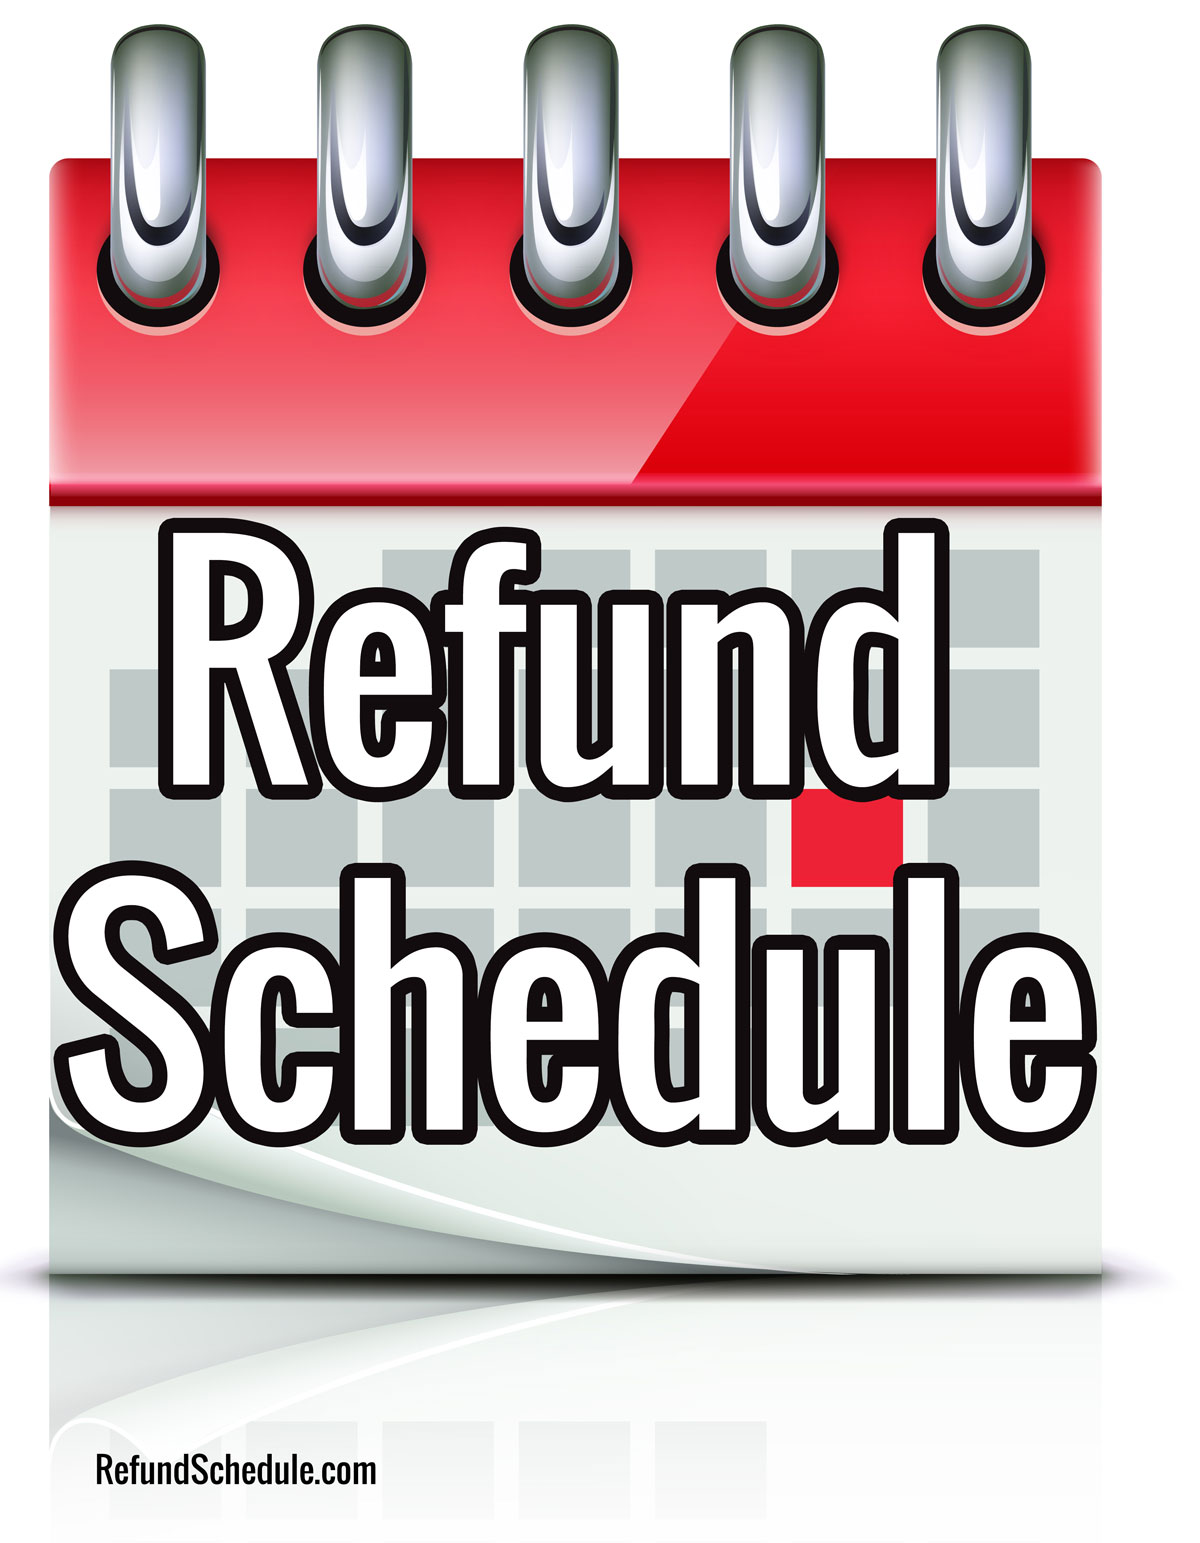 refund-schedule-9 - IRS Refund Schedule 20191200 x 1543